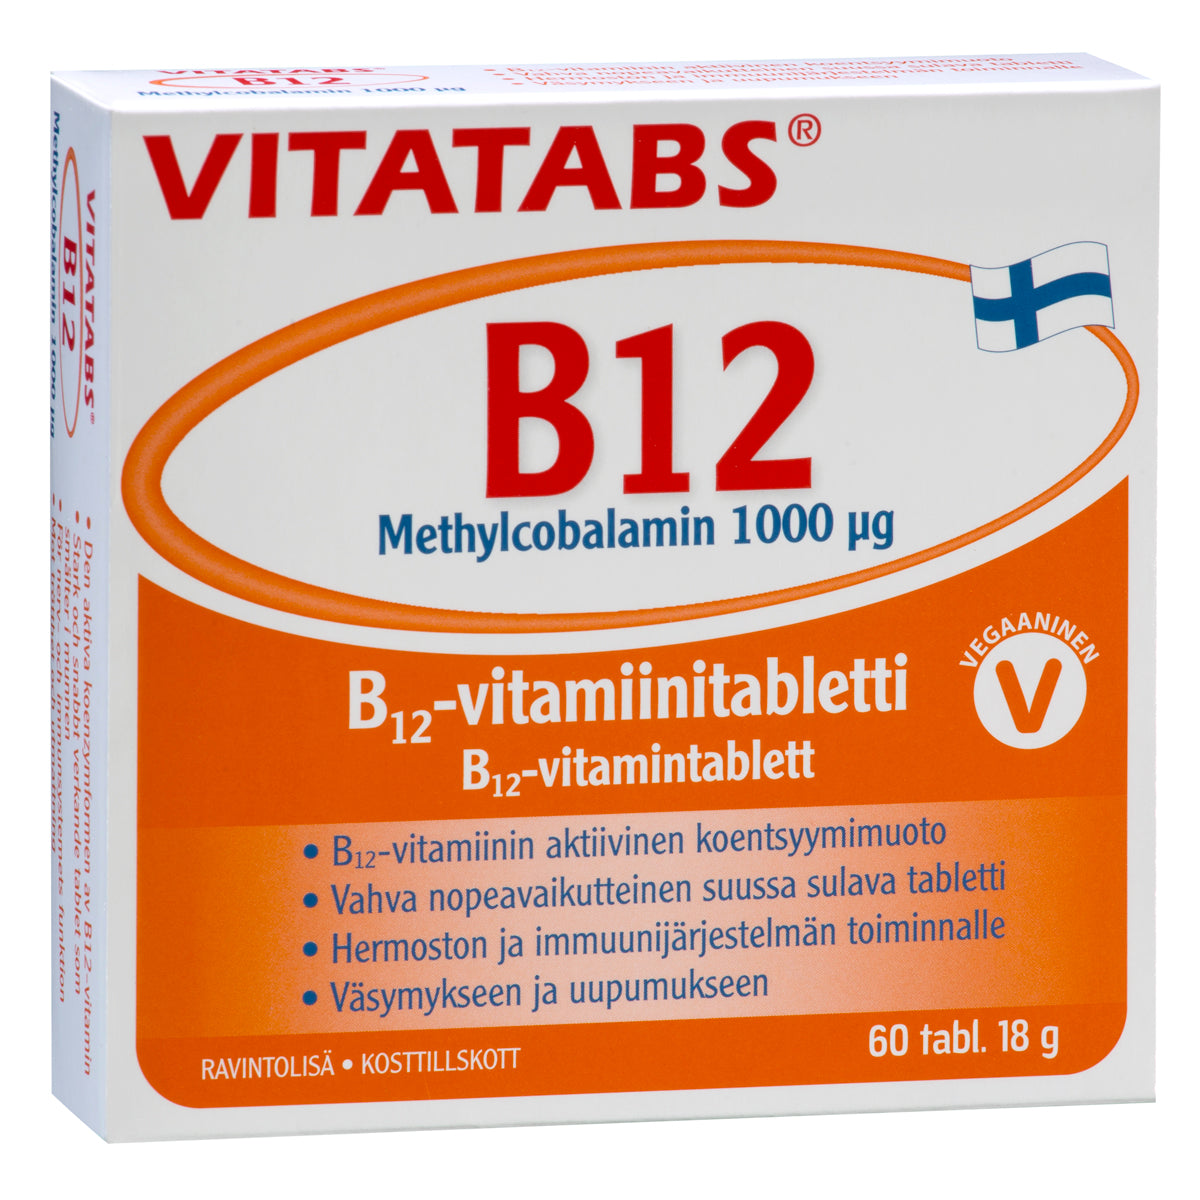 Vitatabs B12 Methylcobalamin 1000 µg 60 tabl. Vahva, tehokkaasti imeytyvä ja nopeavaikutteinen, vegaaneille sopiva Vitatabs B12 -tabletti aktiivisessa metyylikobalamiinimuodossa. Suussa sulava tabletti. Väsymykseen ja uupumukseen. 